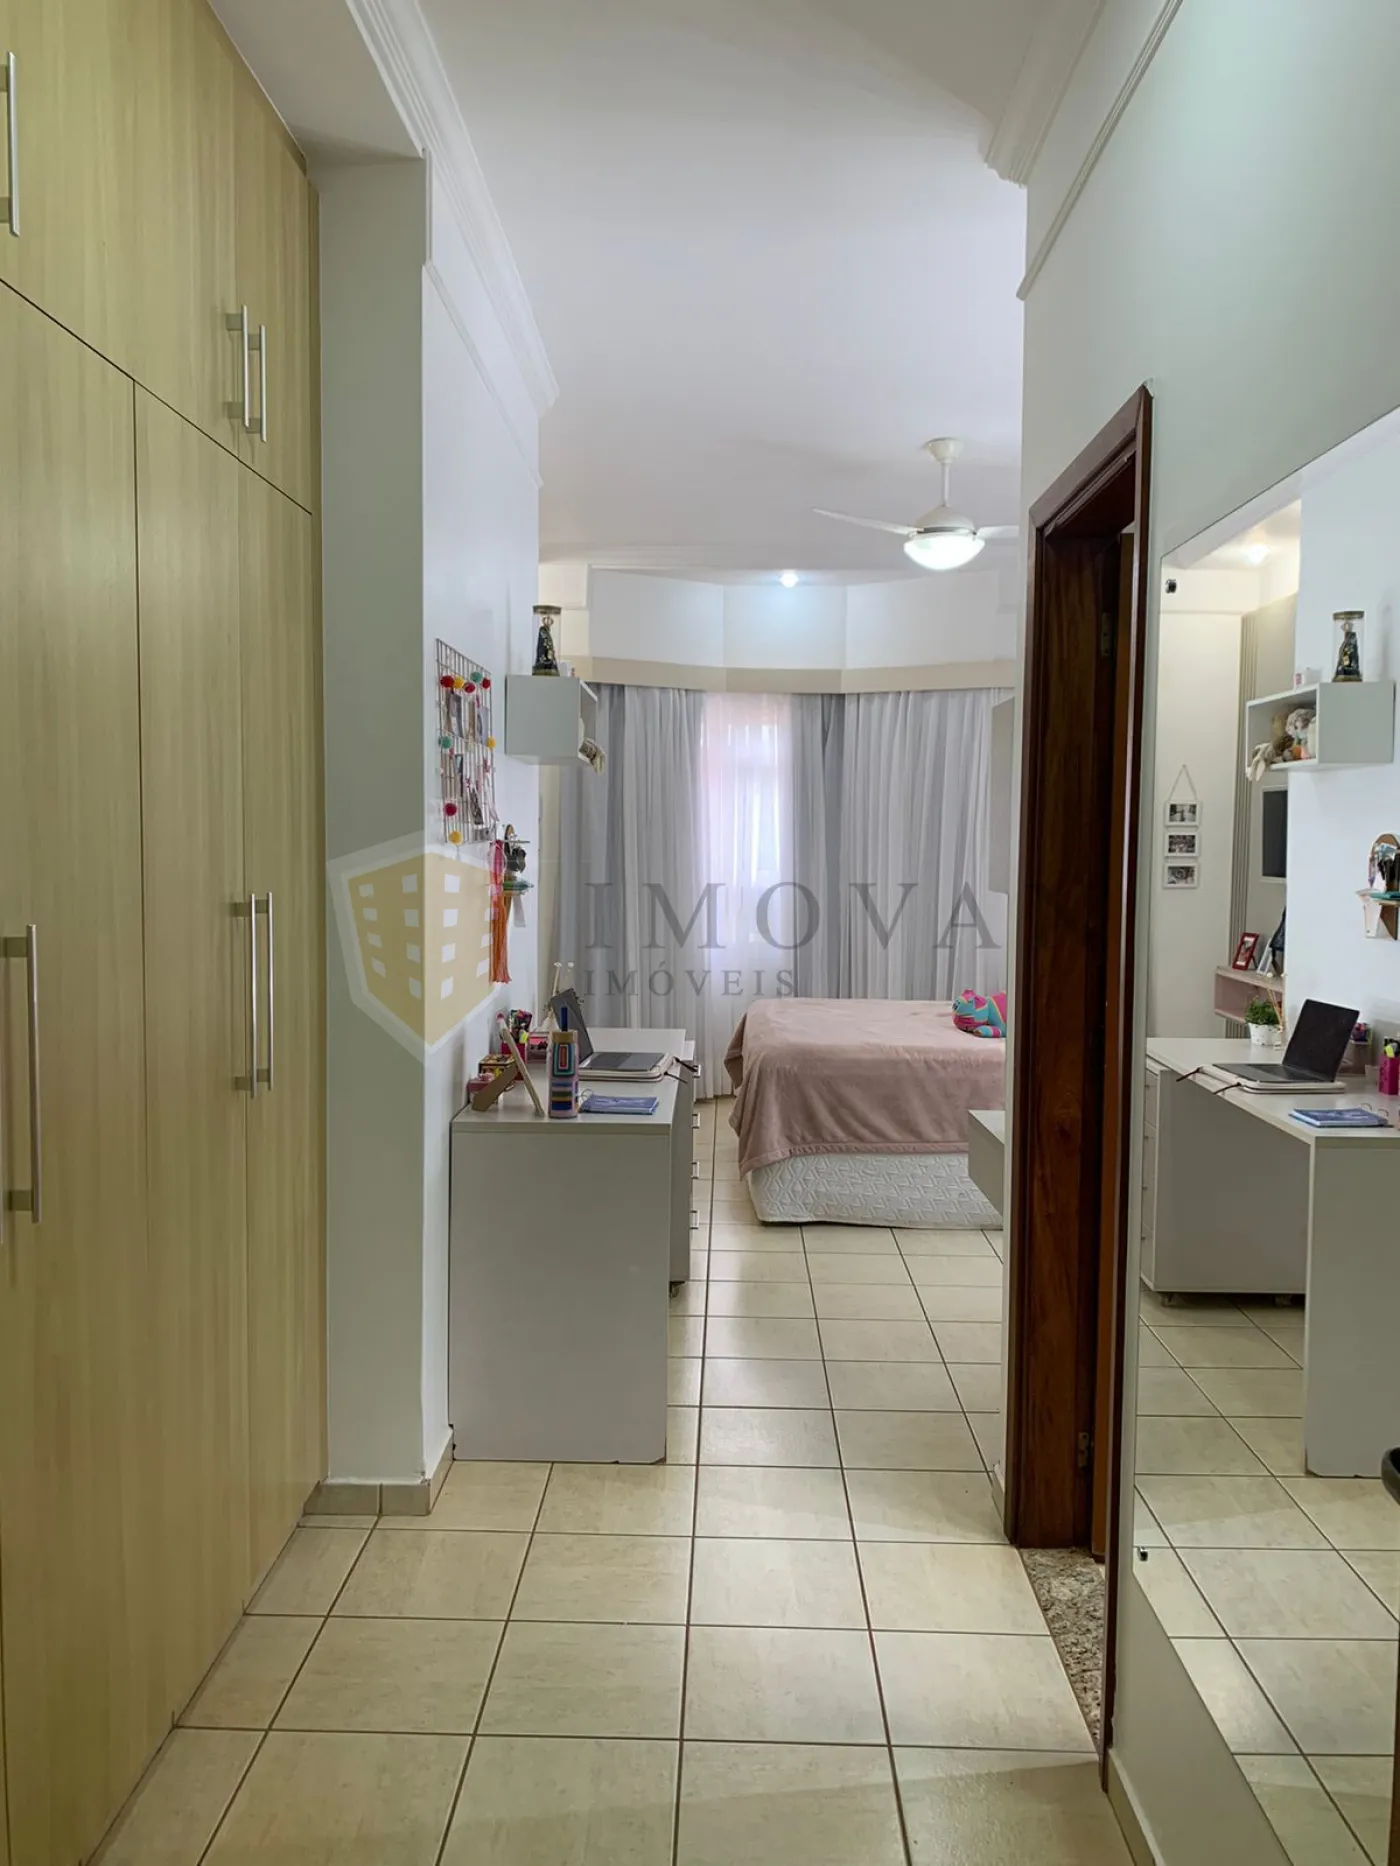 Comprar Casa / Condomínio em Bonfim Paulista R$ 1.800.000,00 - Foto 19